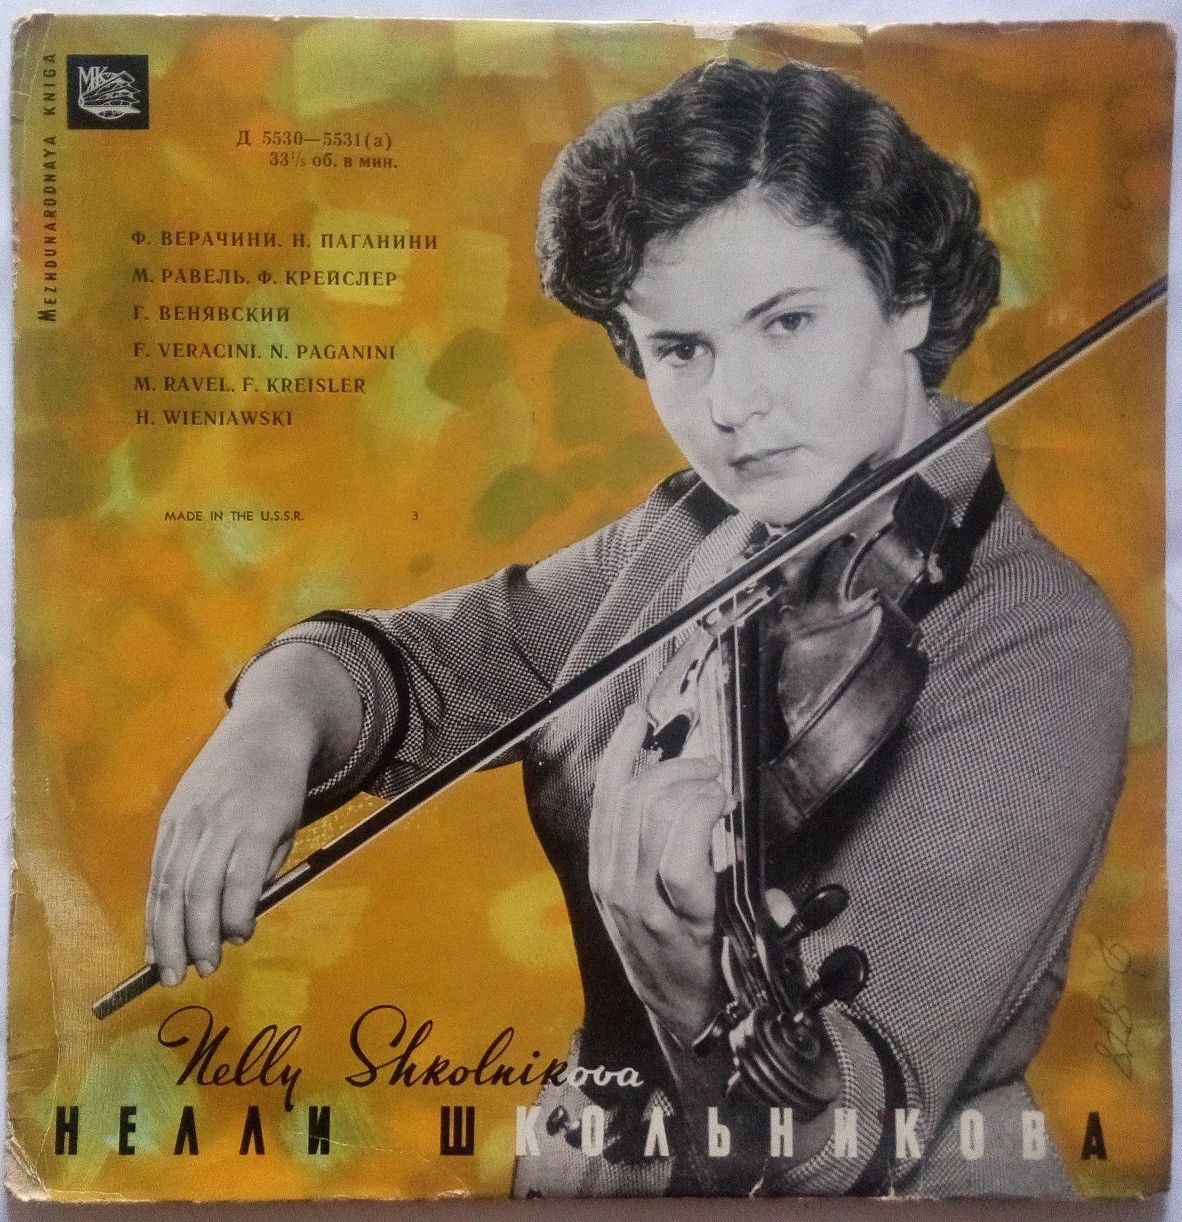 Нелли ШКОЛЬНИКОВА (скрипка)